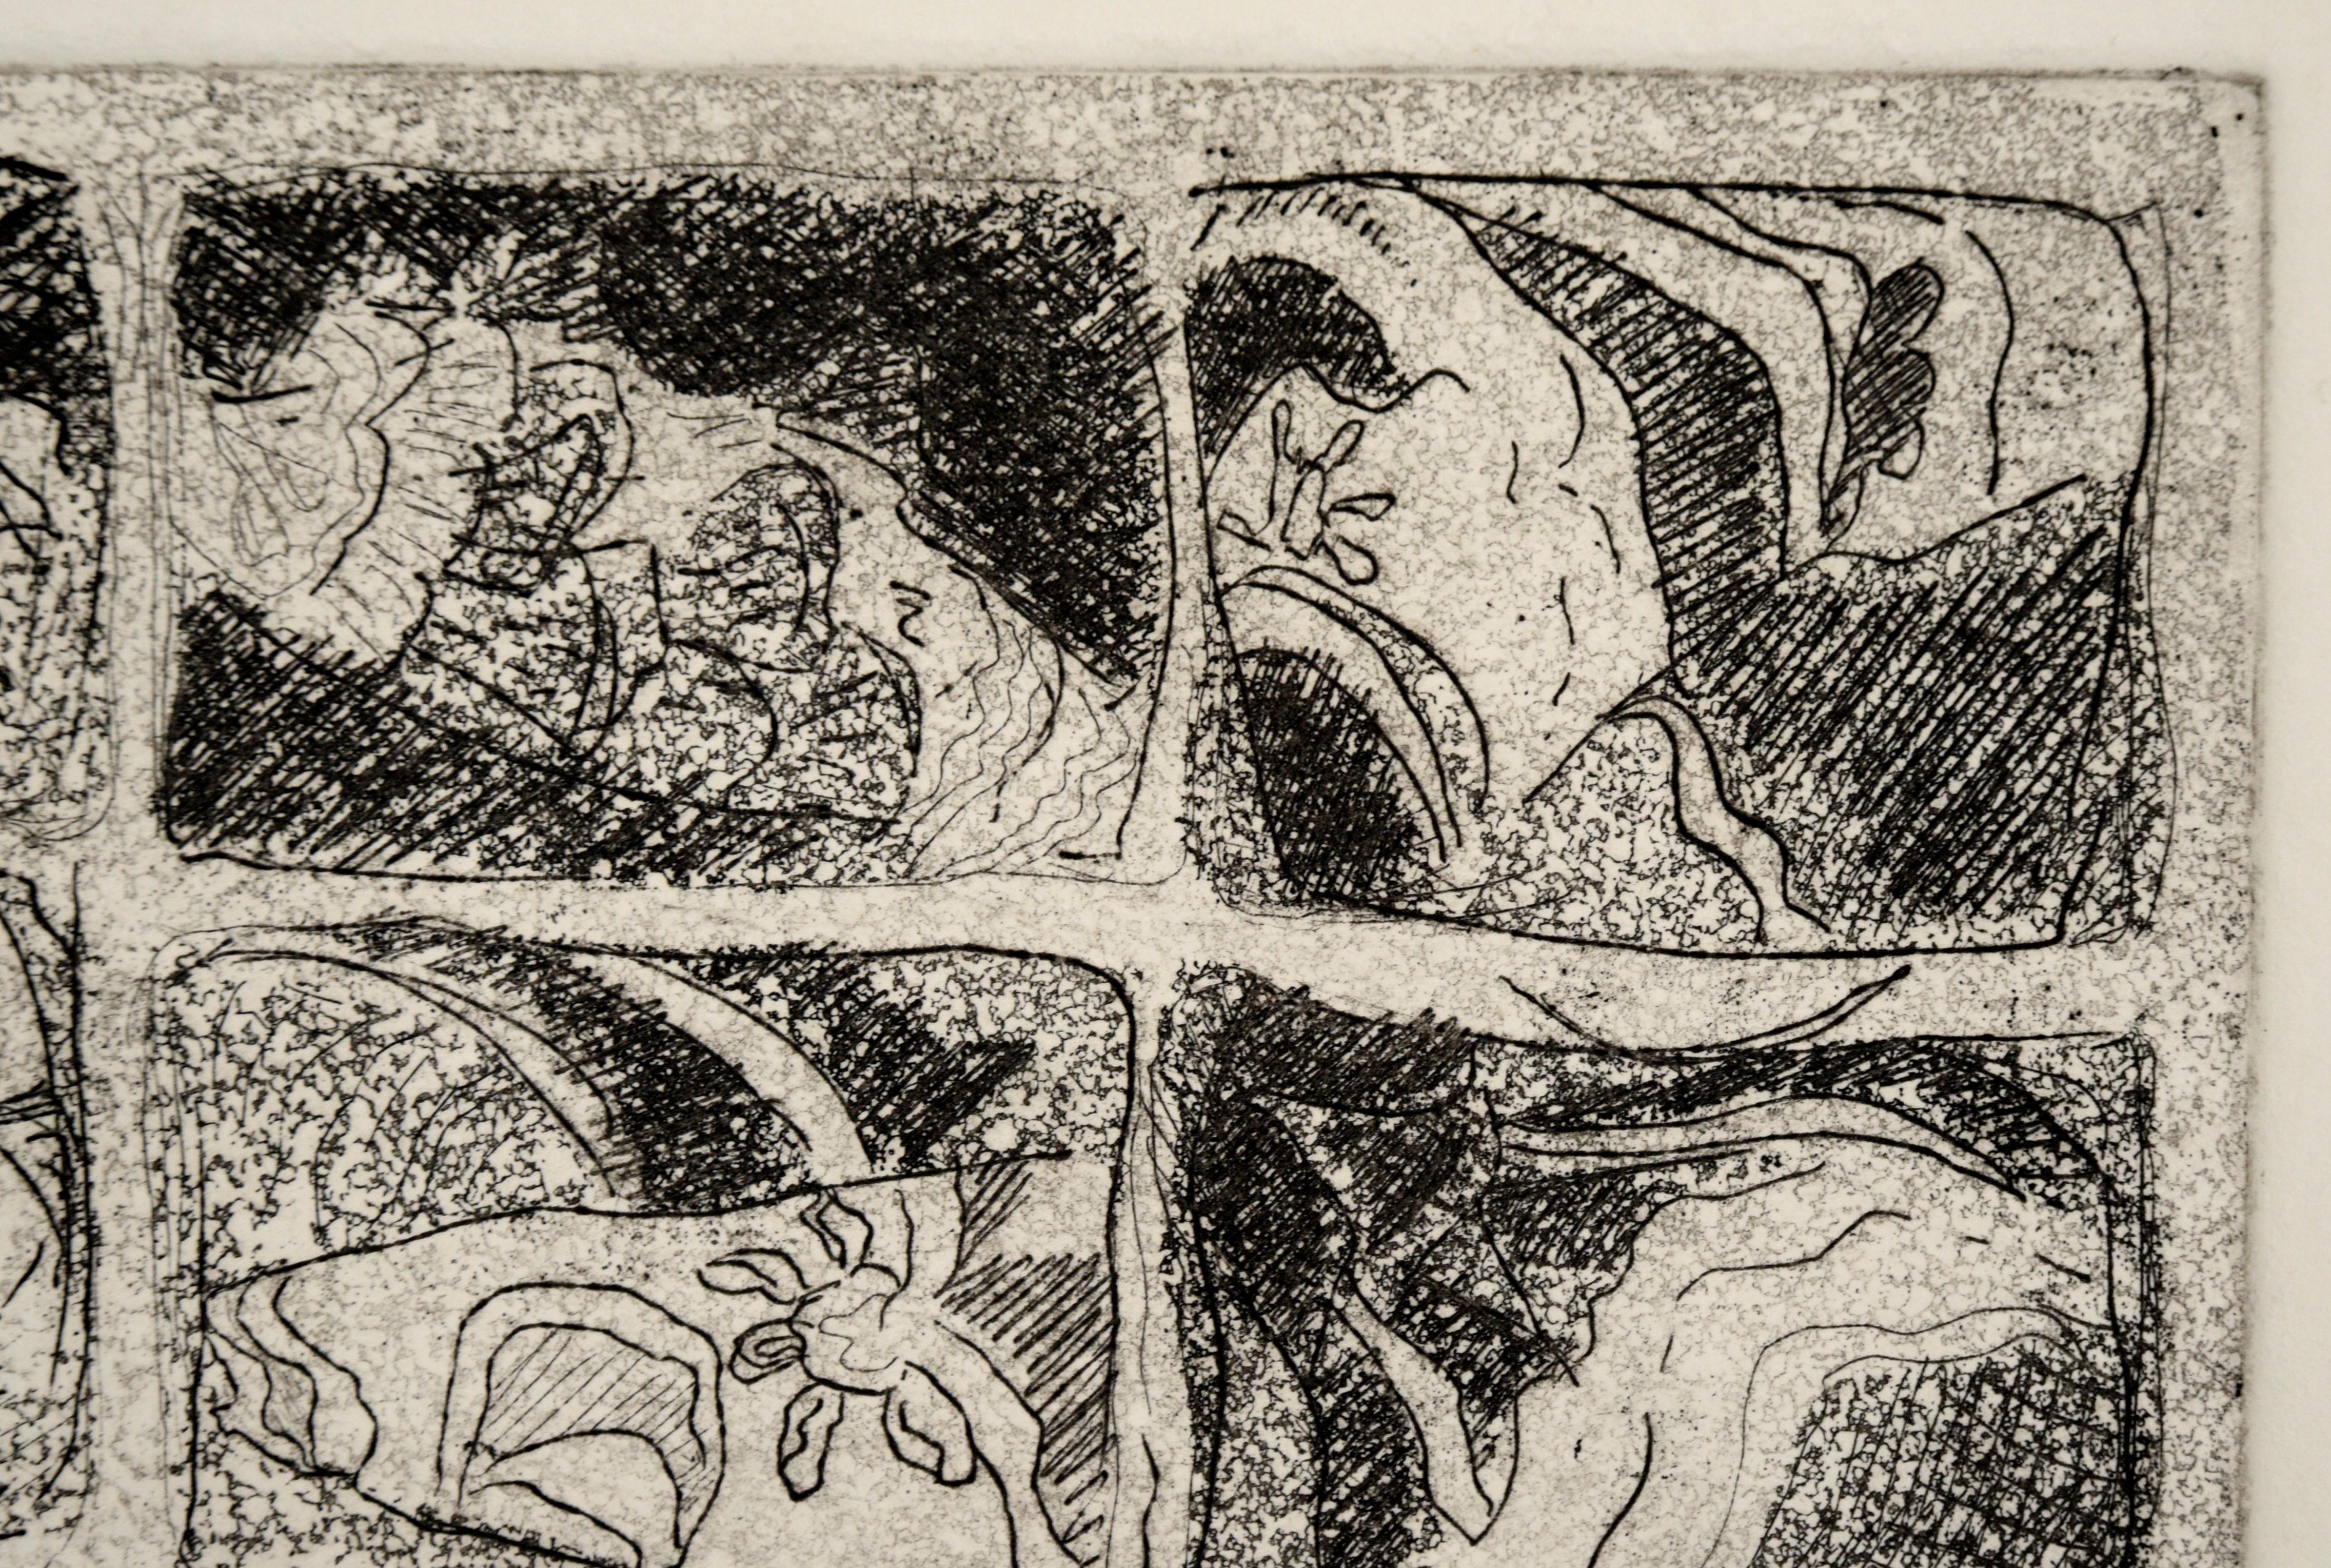 Abstrahierter Druck von Doris Ann Warner (Amerikanerin, 1925-2010). Neun Scheiben sind in einem Raster von drei mal drei angeordnet, jede mit einer kleinen abstrahierten Szene. Es gibt Objekte, die wie Blumen, Blätter und die Sonne aussehen, sowie